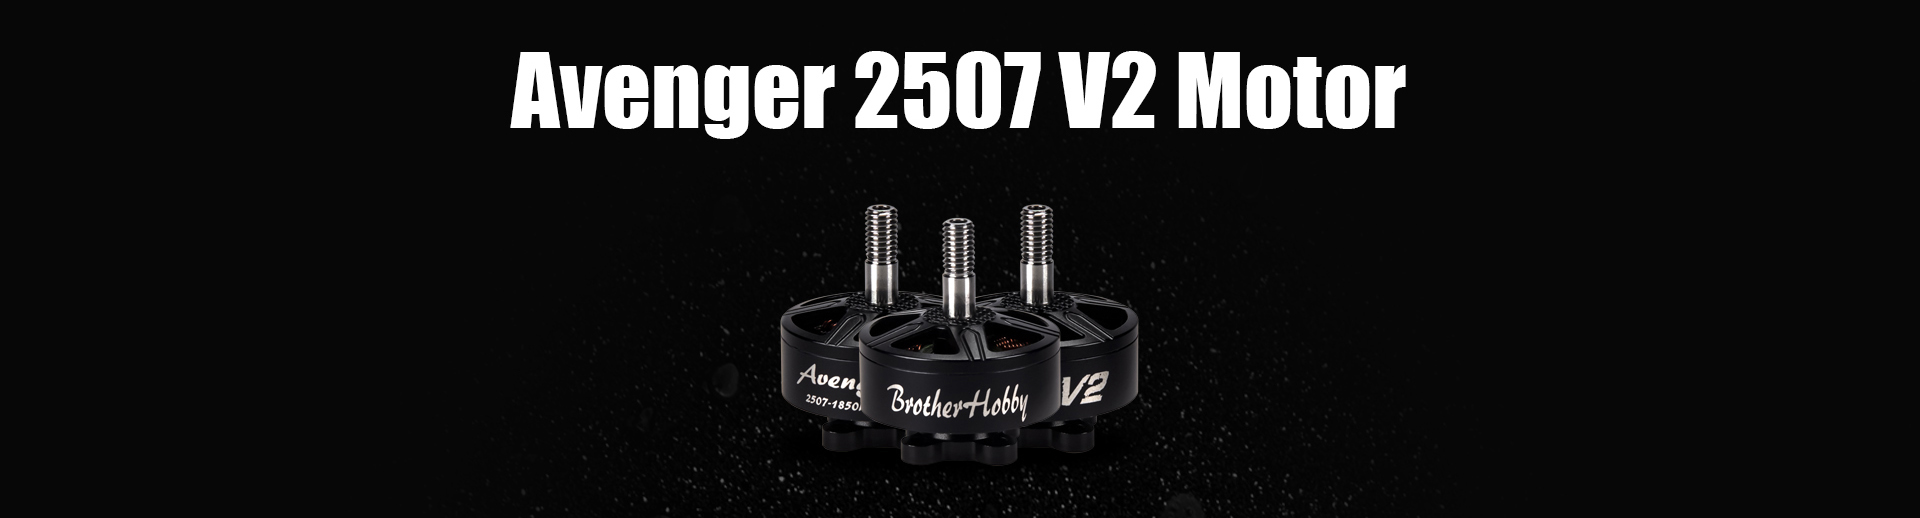 Avenger 2507 V2 Motor